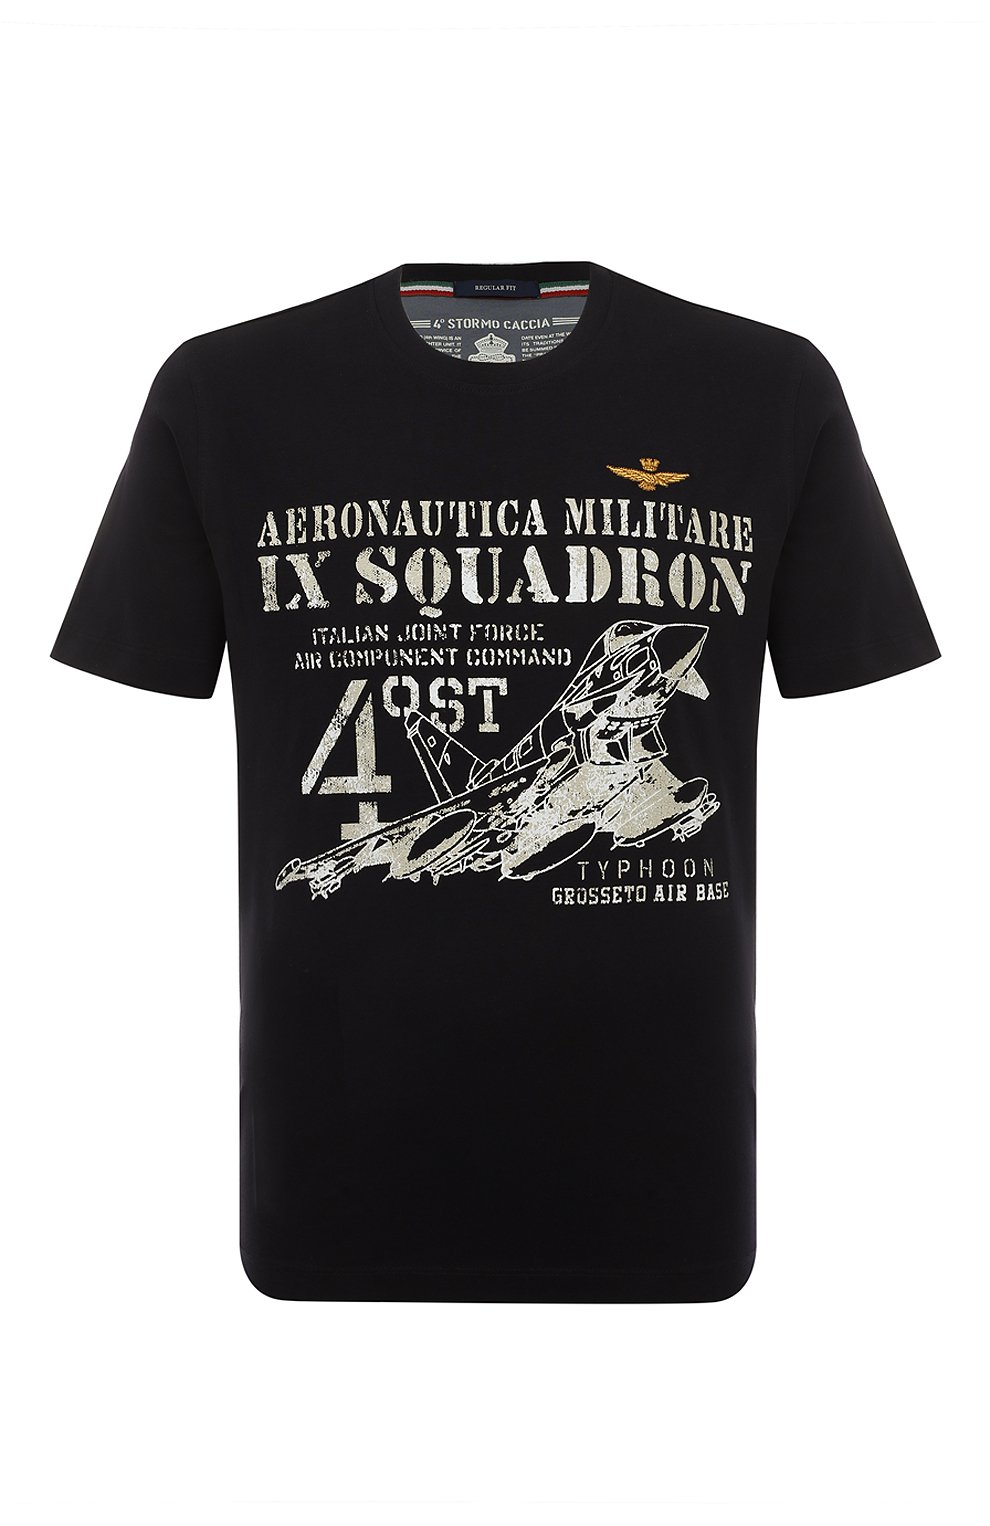 Футболки Aeronautica Militare, Хлопковая футболка Aeronautica Militare, Бангладеш, Синий, Хлопок: 100%;, 13372885  - купить